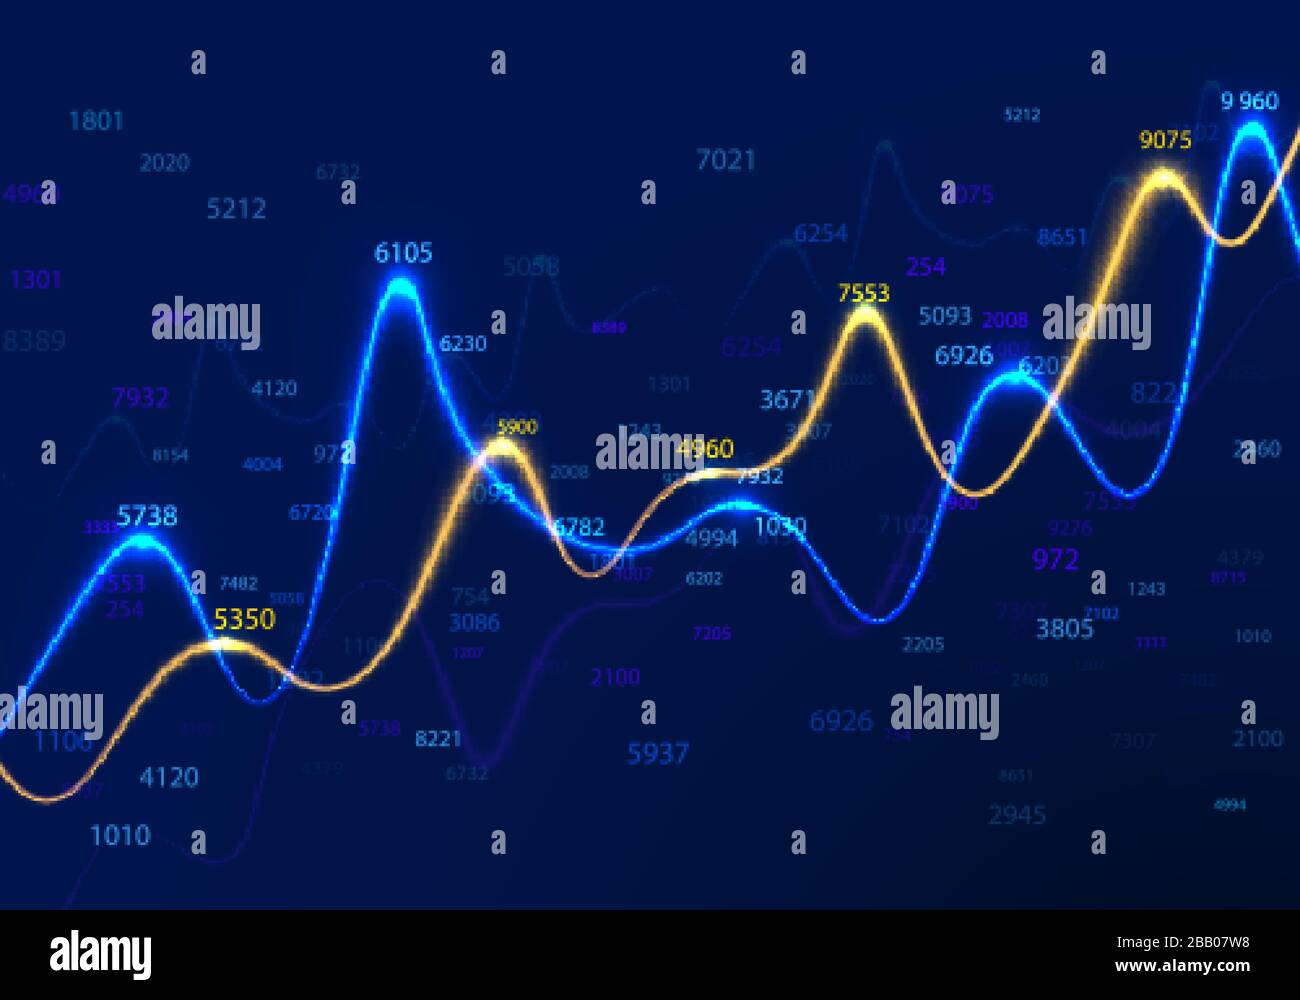 Geschäftsdiagramme und Diagramme auf blauem Hintergrund mit zufälligen Zahlen. Statistik und Handelsforschung. Finanzbericht und Konjunkturdiagramme. Inf Stock Vektor